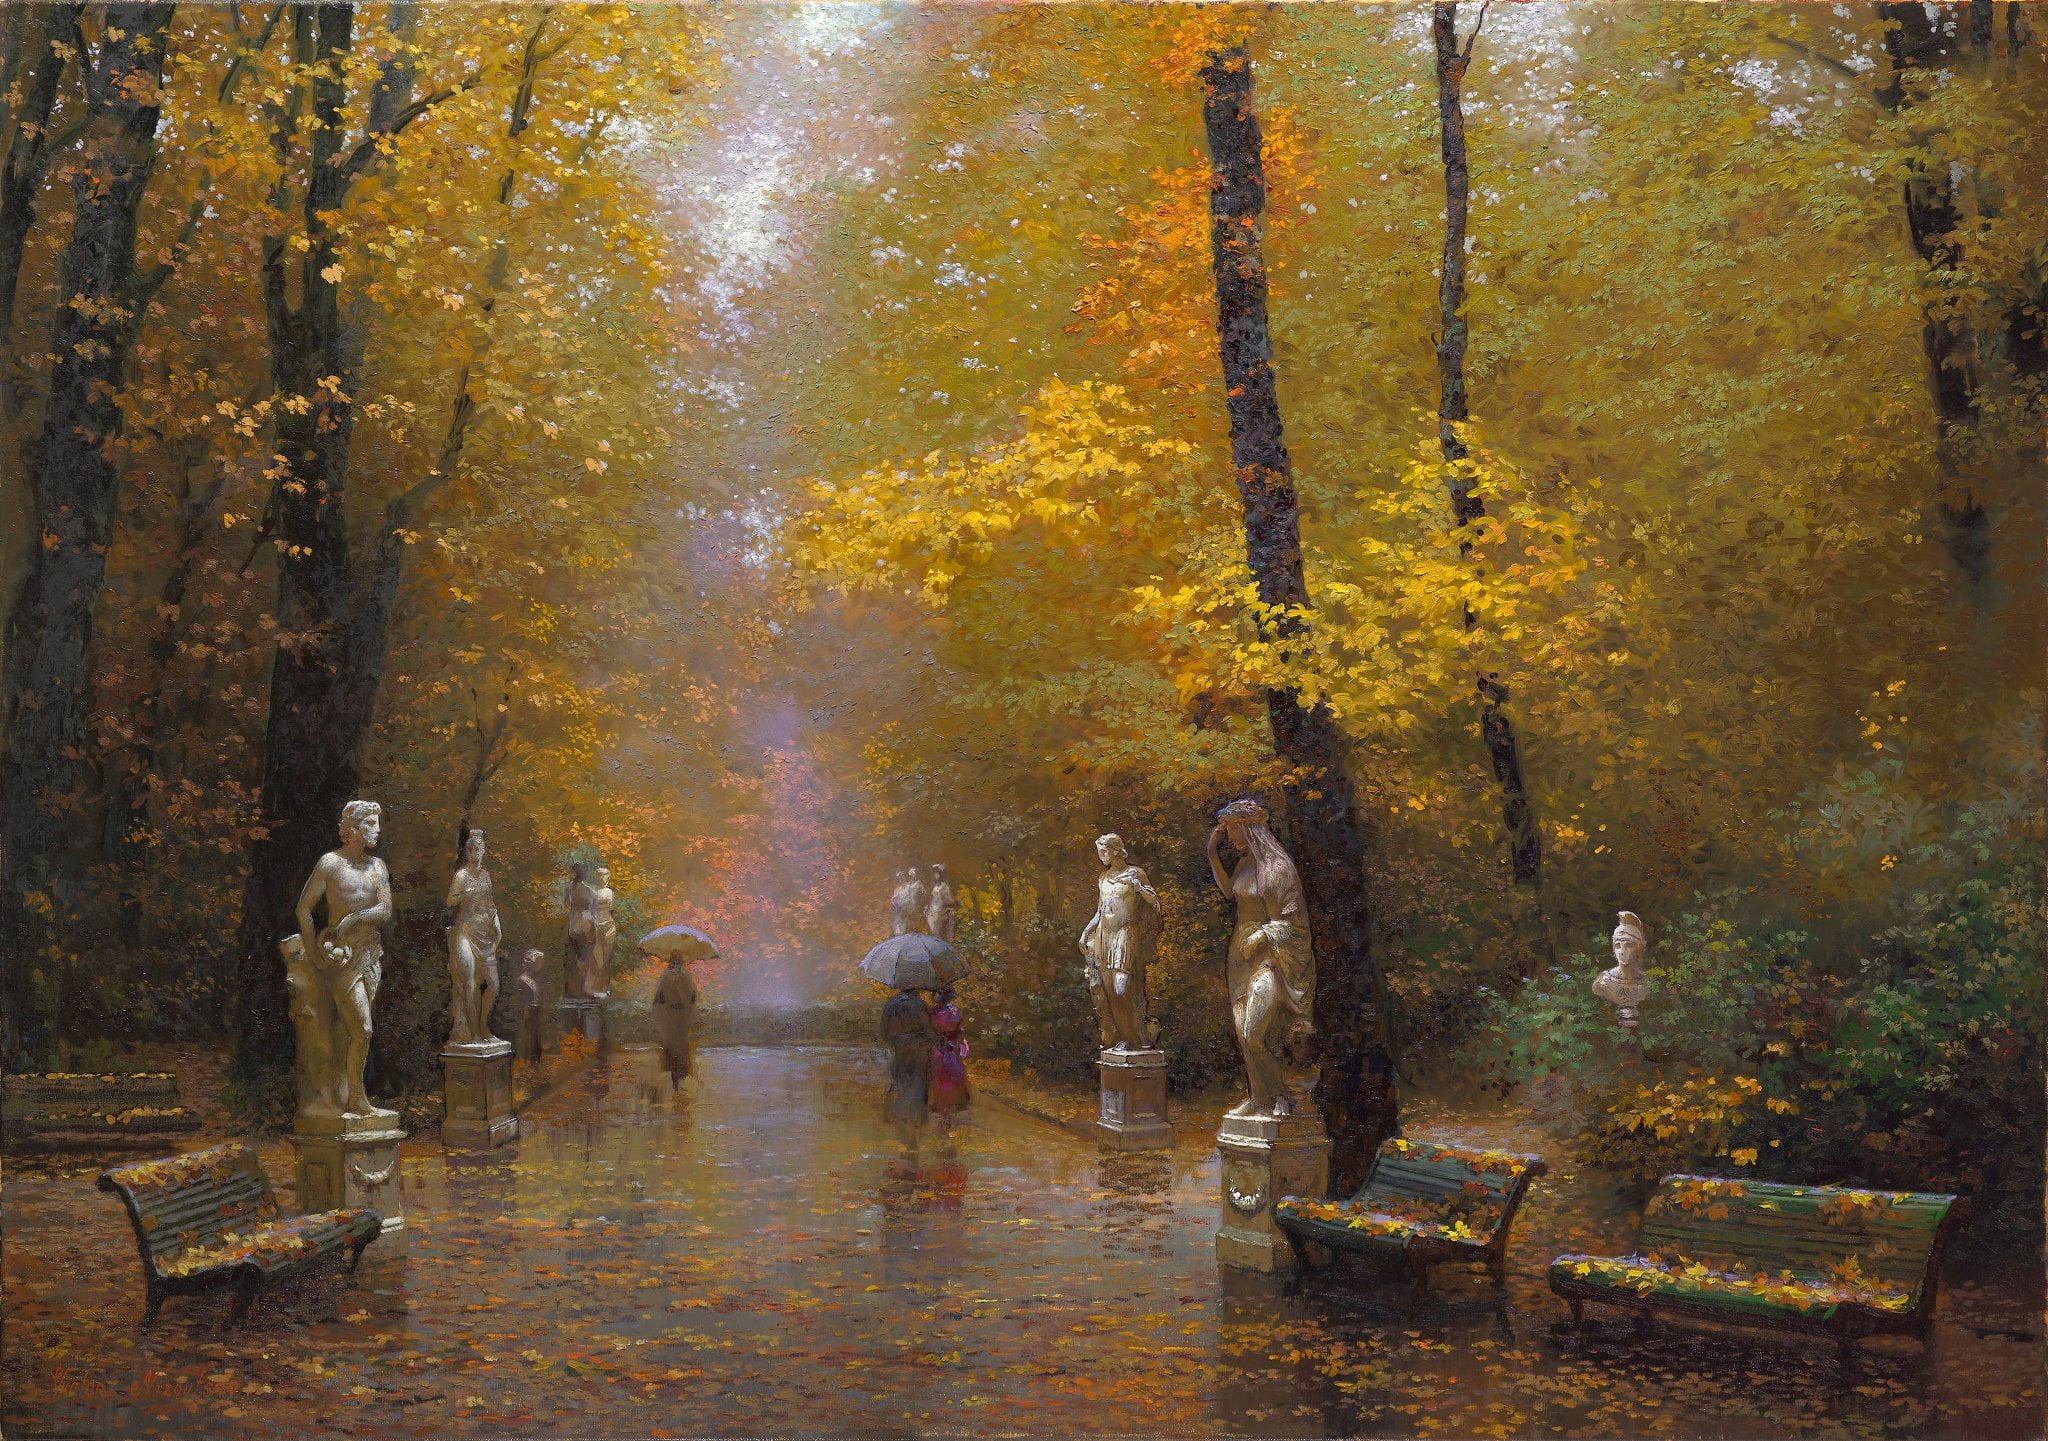 landscape painting, autumn, trees, Park, rain, picture, art, umbrellas